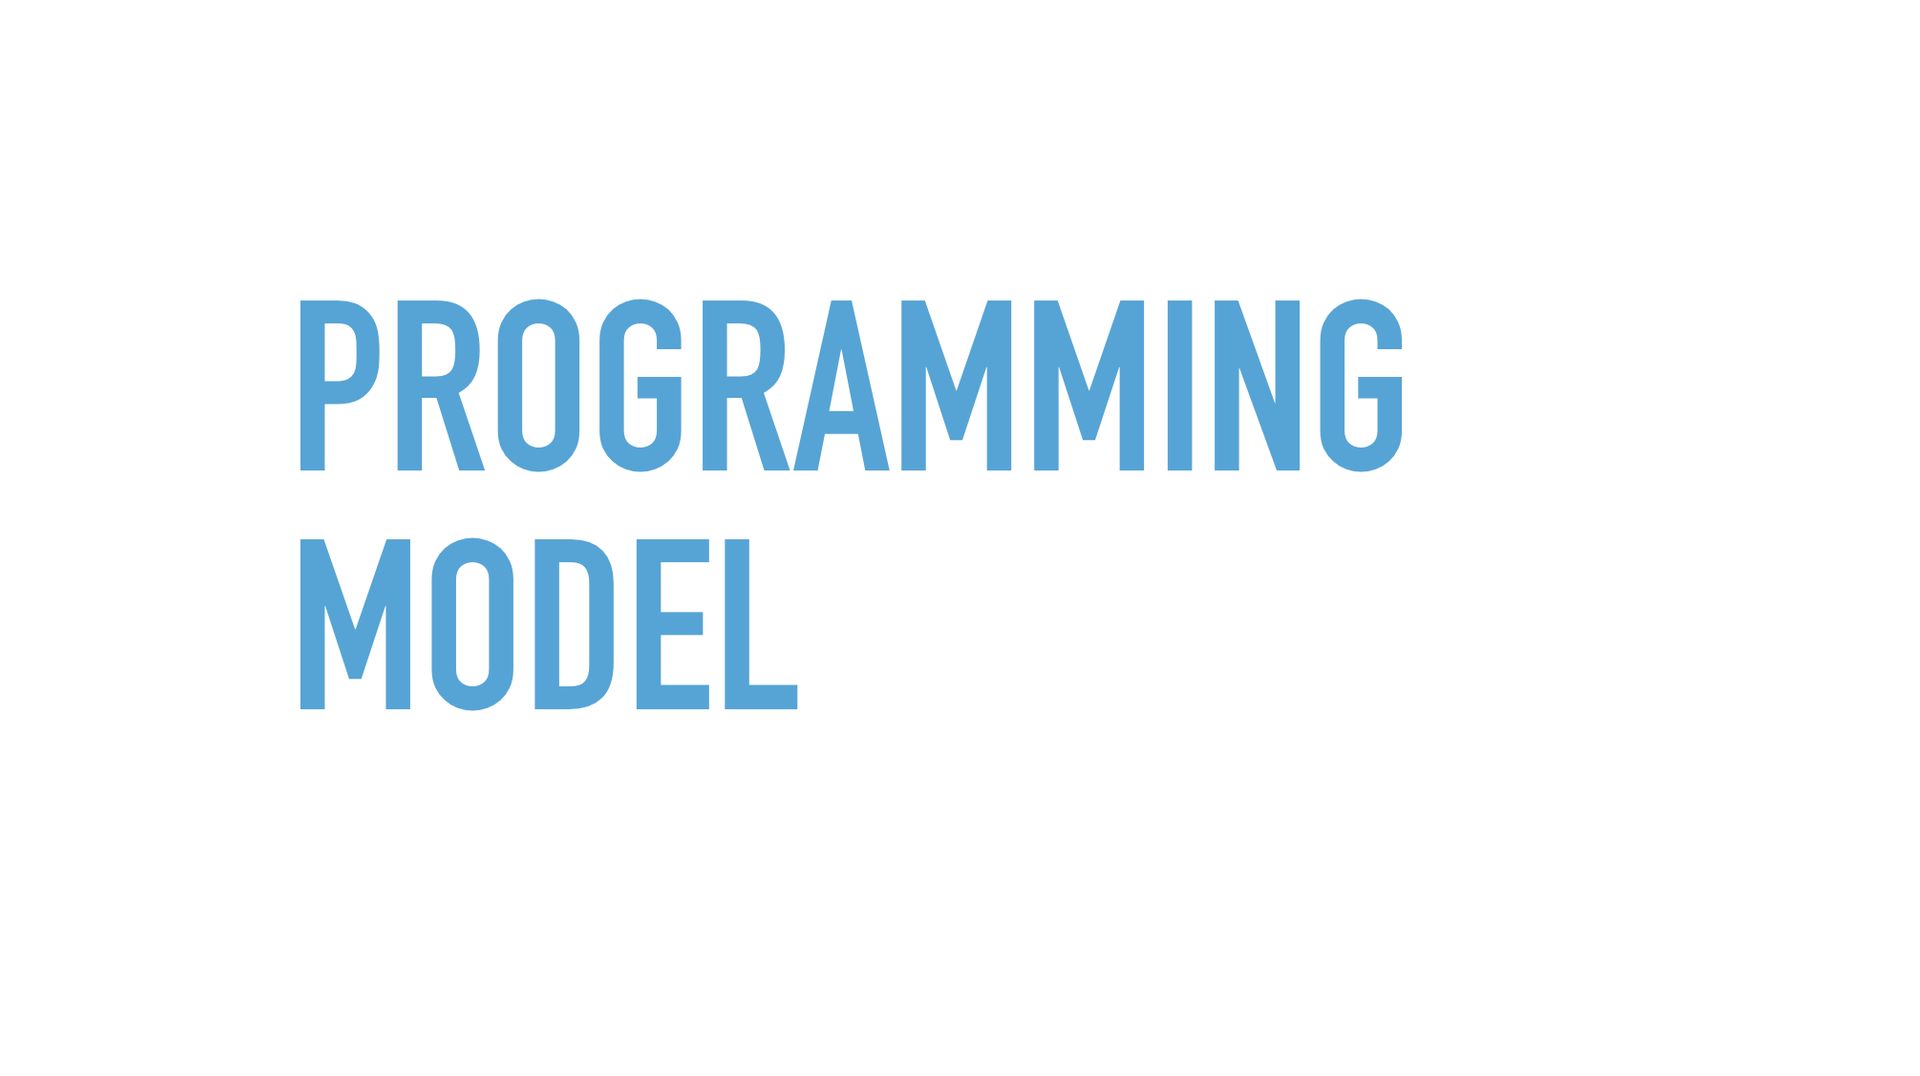 Slide text: Programming model